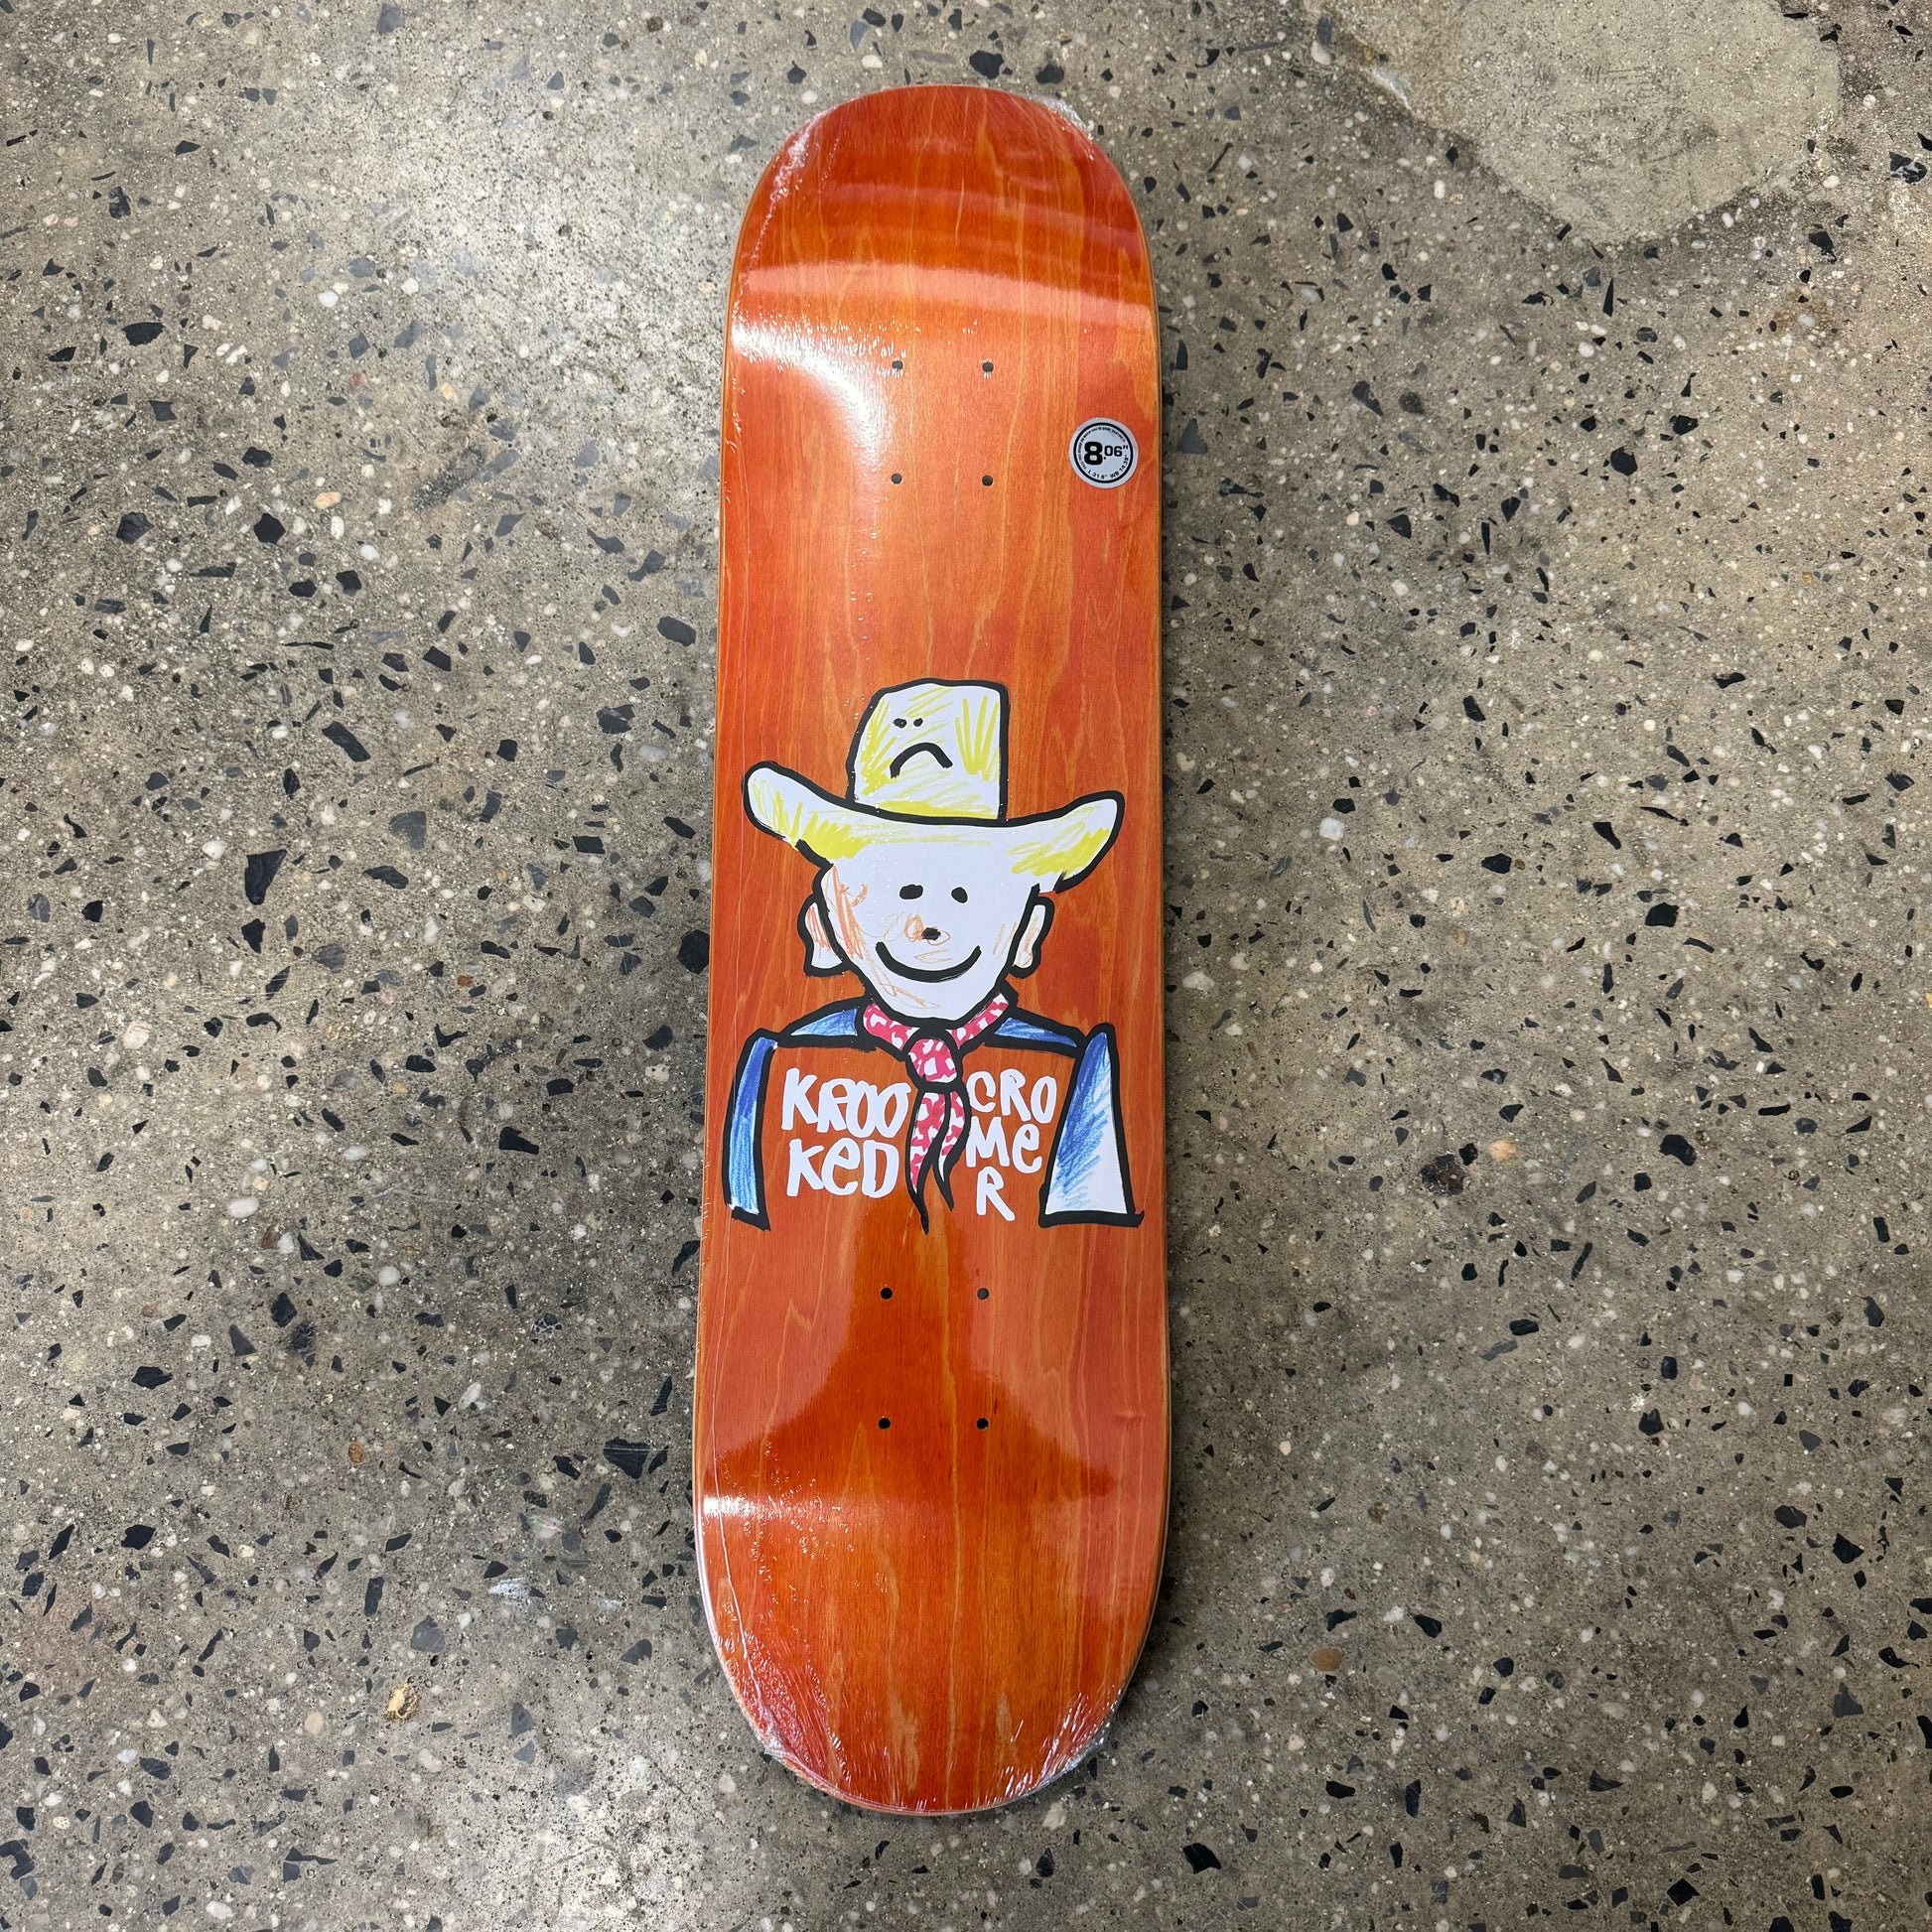 drawing of cowboy on orange wood grain skate deck (wood grain colors may vary)